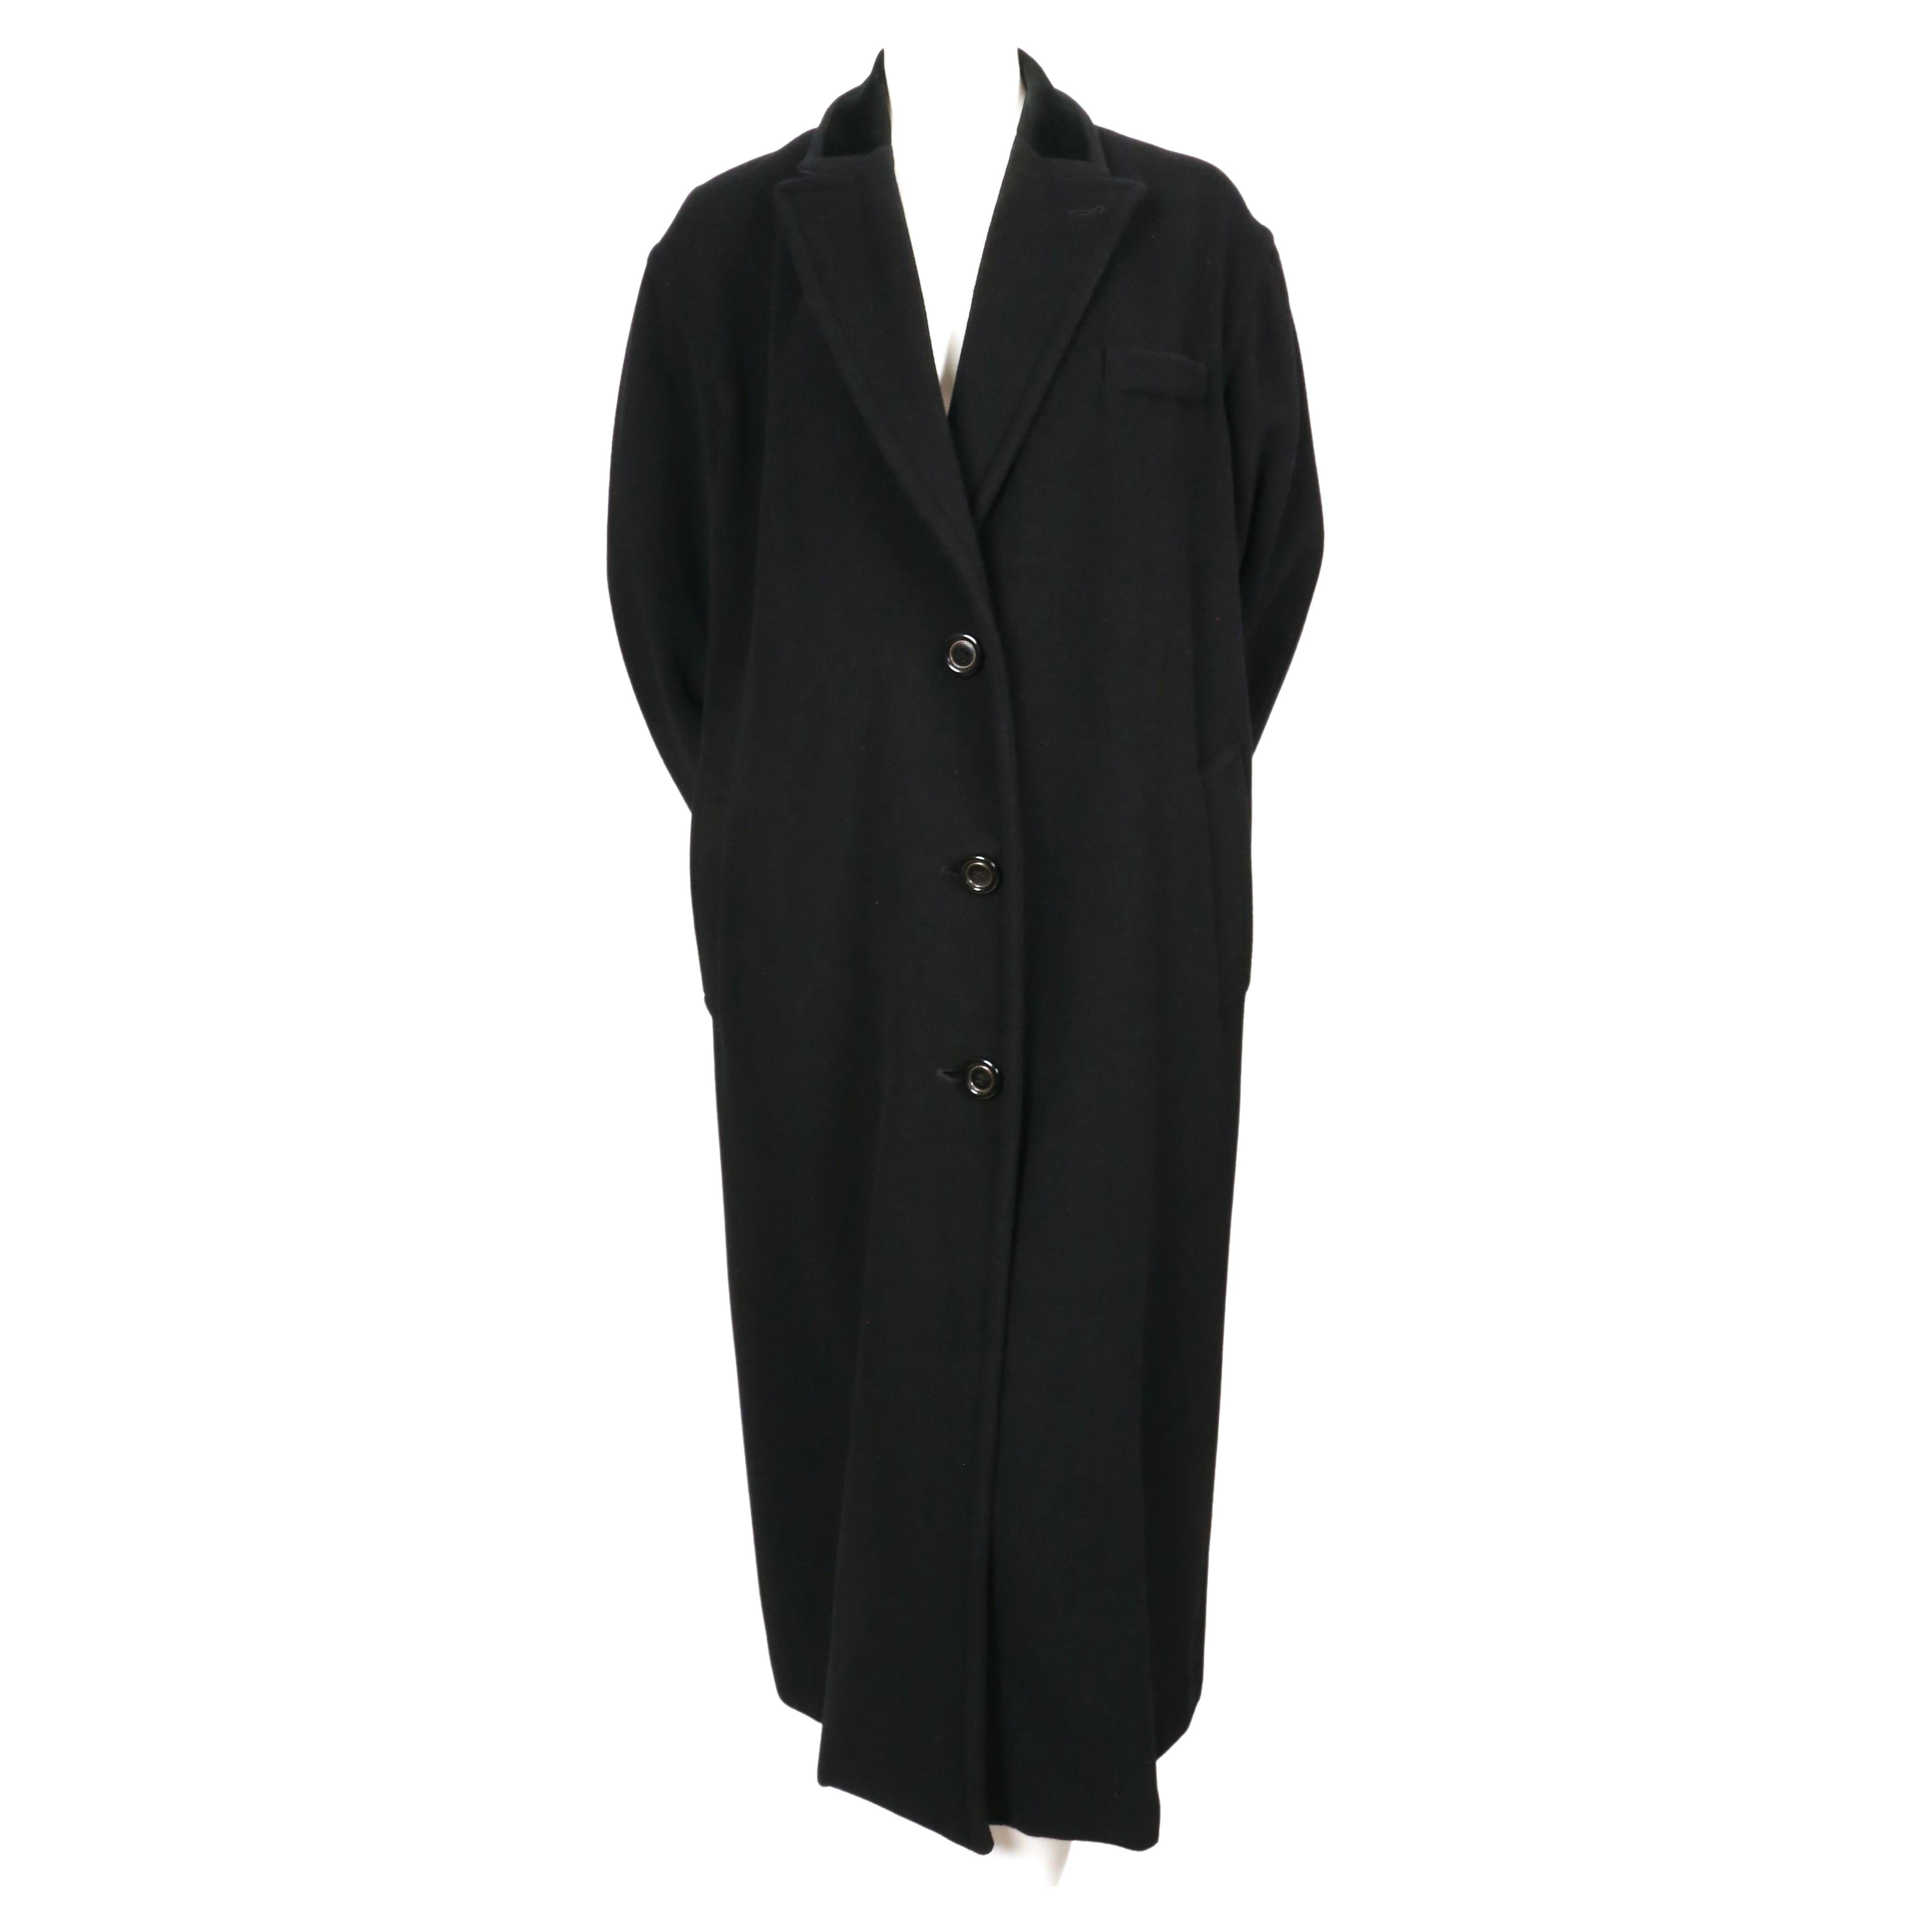 Manteau oversize en mohair et laine noire avec garniture en velours, conçu par Jean Paul Gaultier et datant de l'automne 1998. Labellisé 36 français, il a cependant une coupe très oversize et conviendra donc à un 2-8 selon la coupe souhaitée. Le